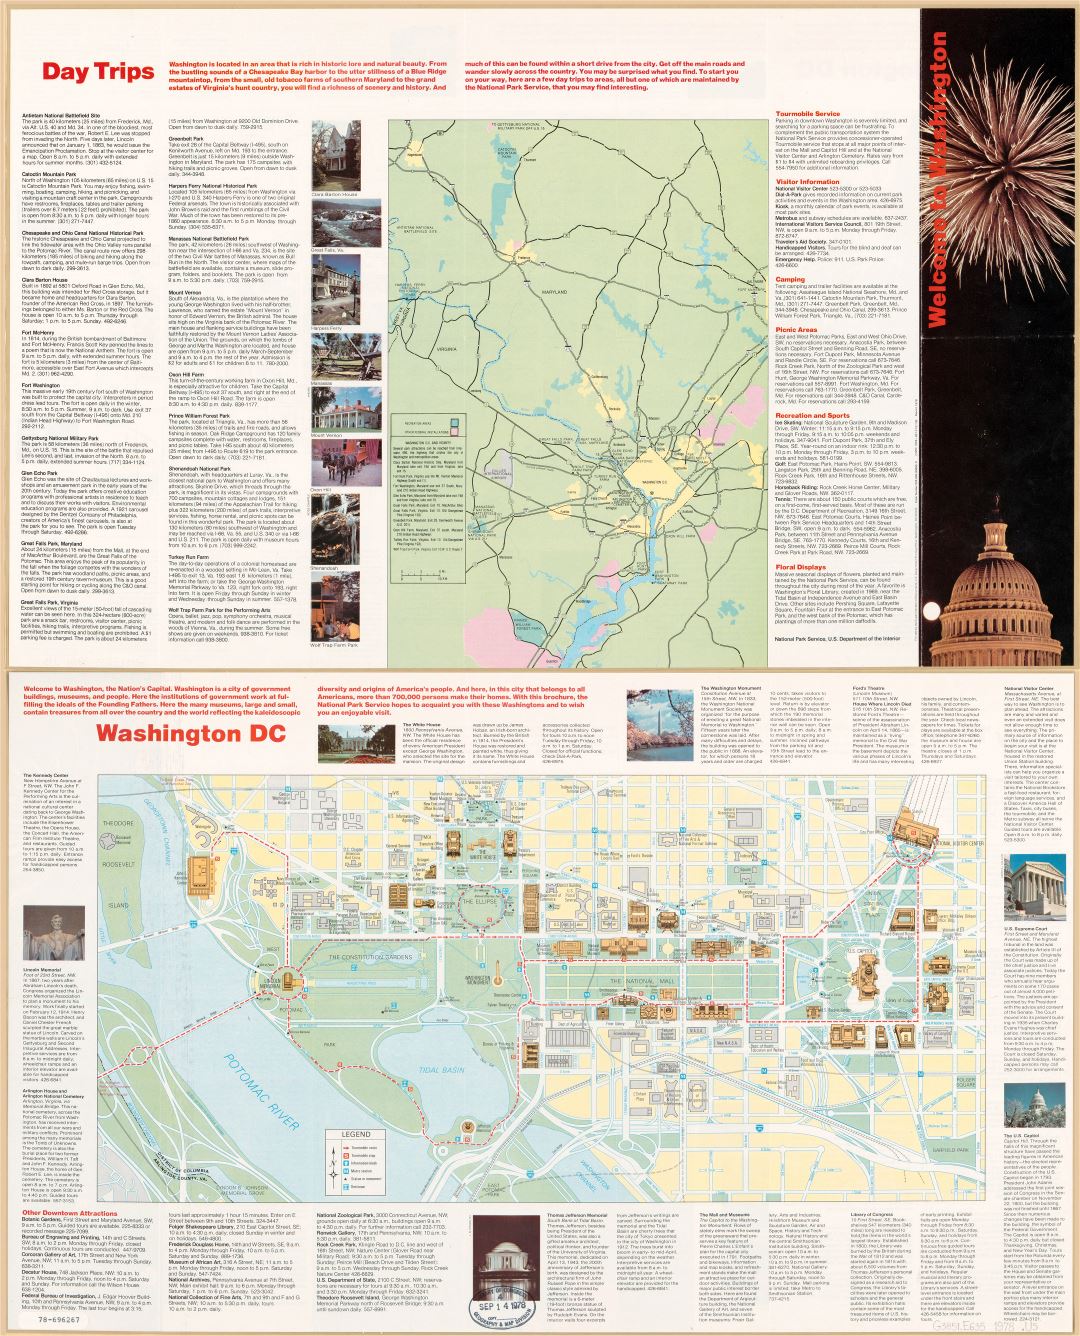 Large scale travel map of Washington D.C. - 1978